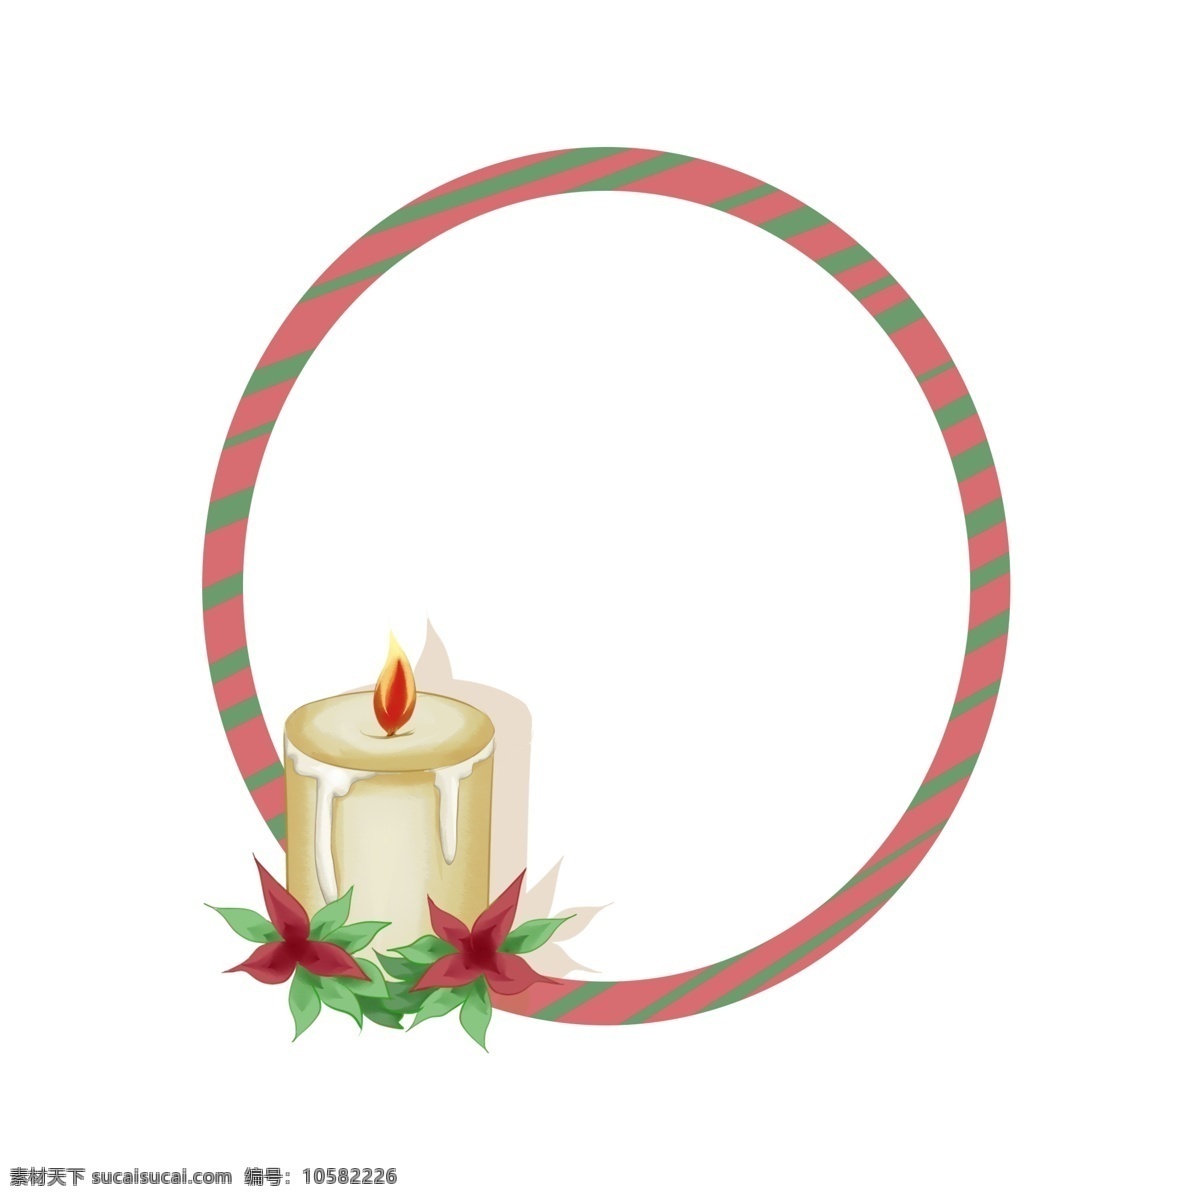 圣诞节 蜡烛 边框 插画 唯美边框 可爱的边框 手绘边框 卡通边框 圆形边框 绿色的叶子